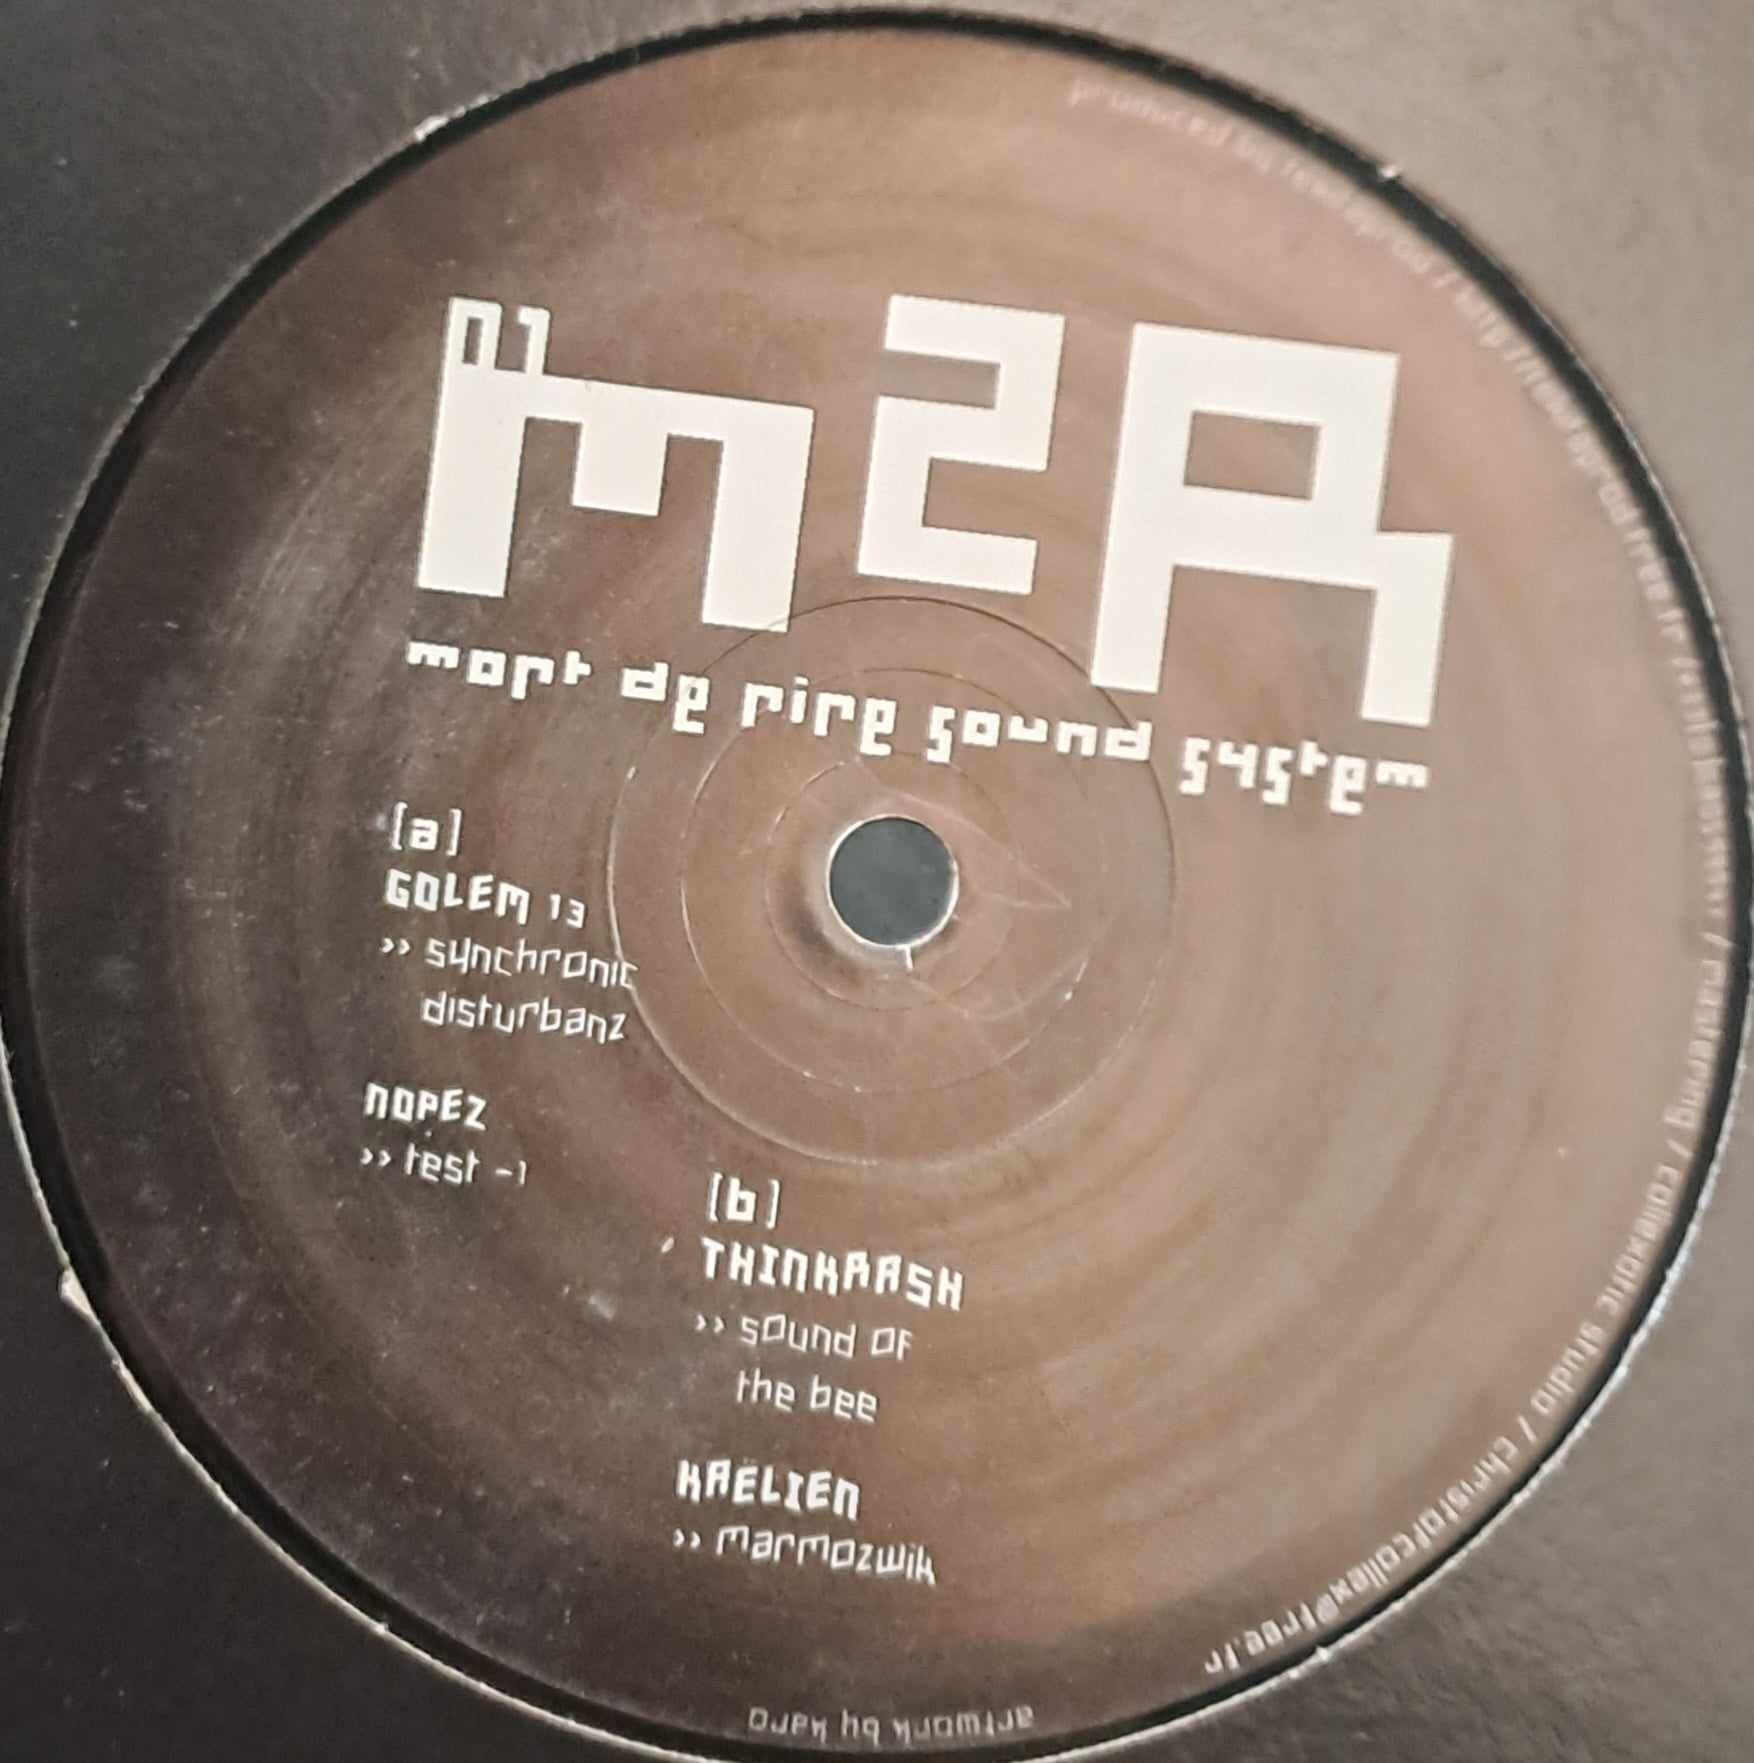 Mort De Rire Sound System 01 - vinyle freetekno